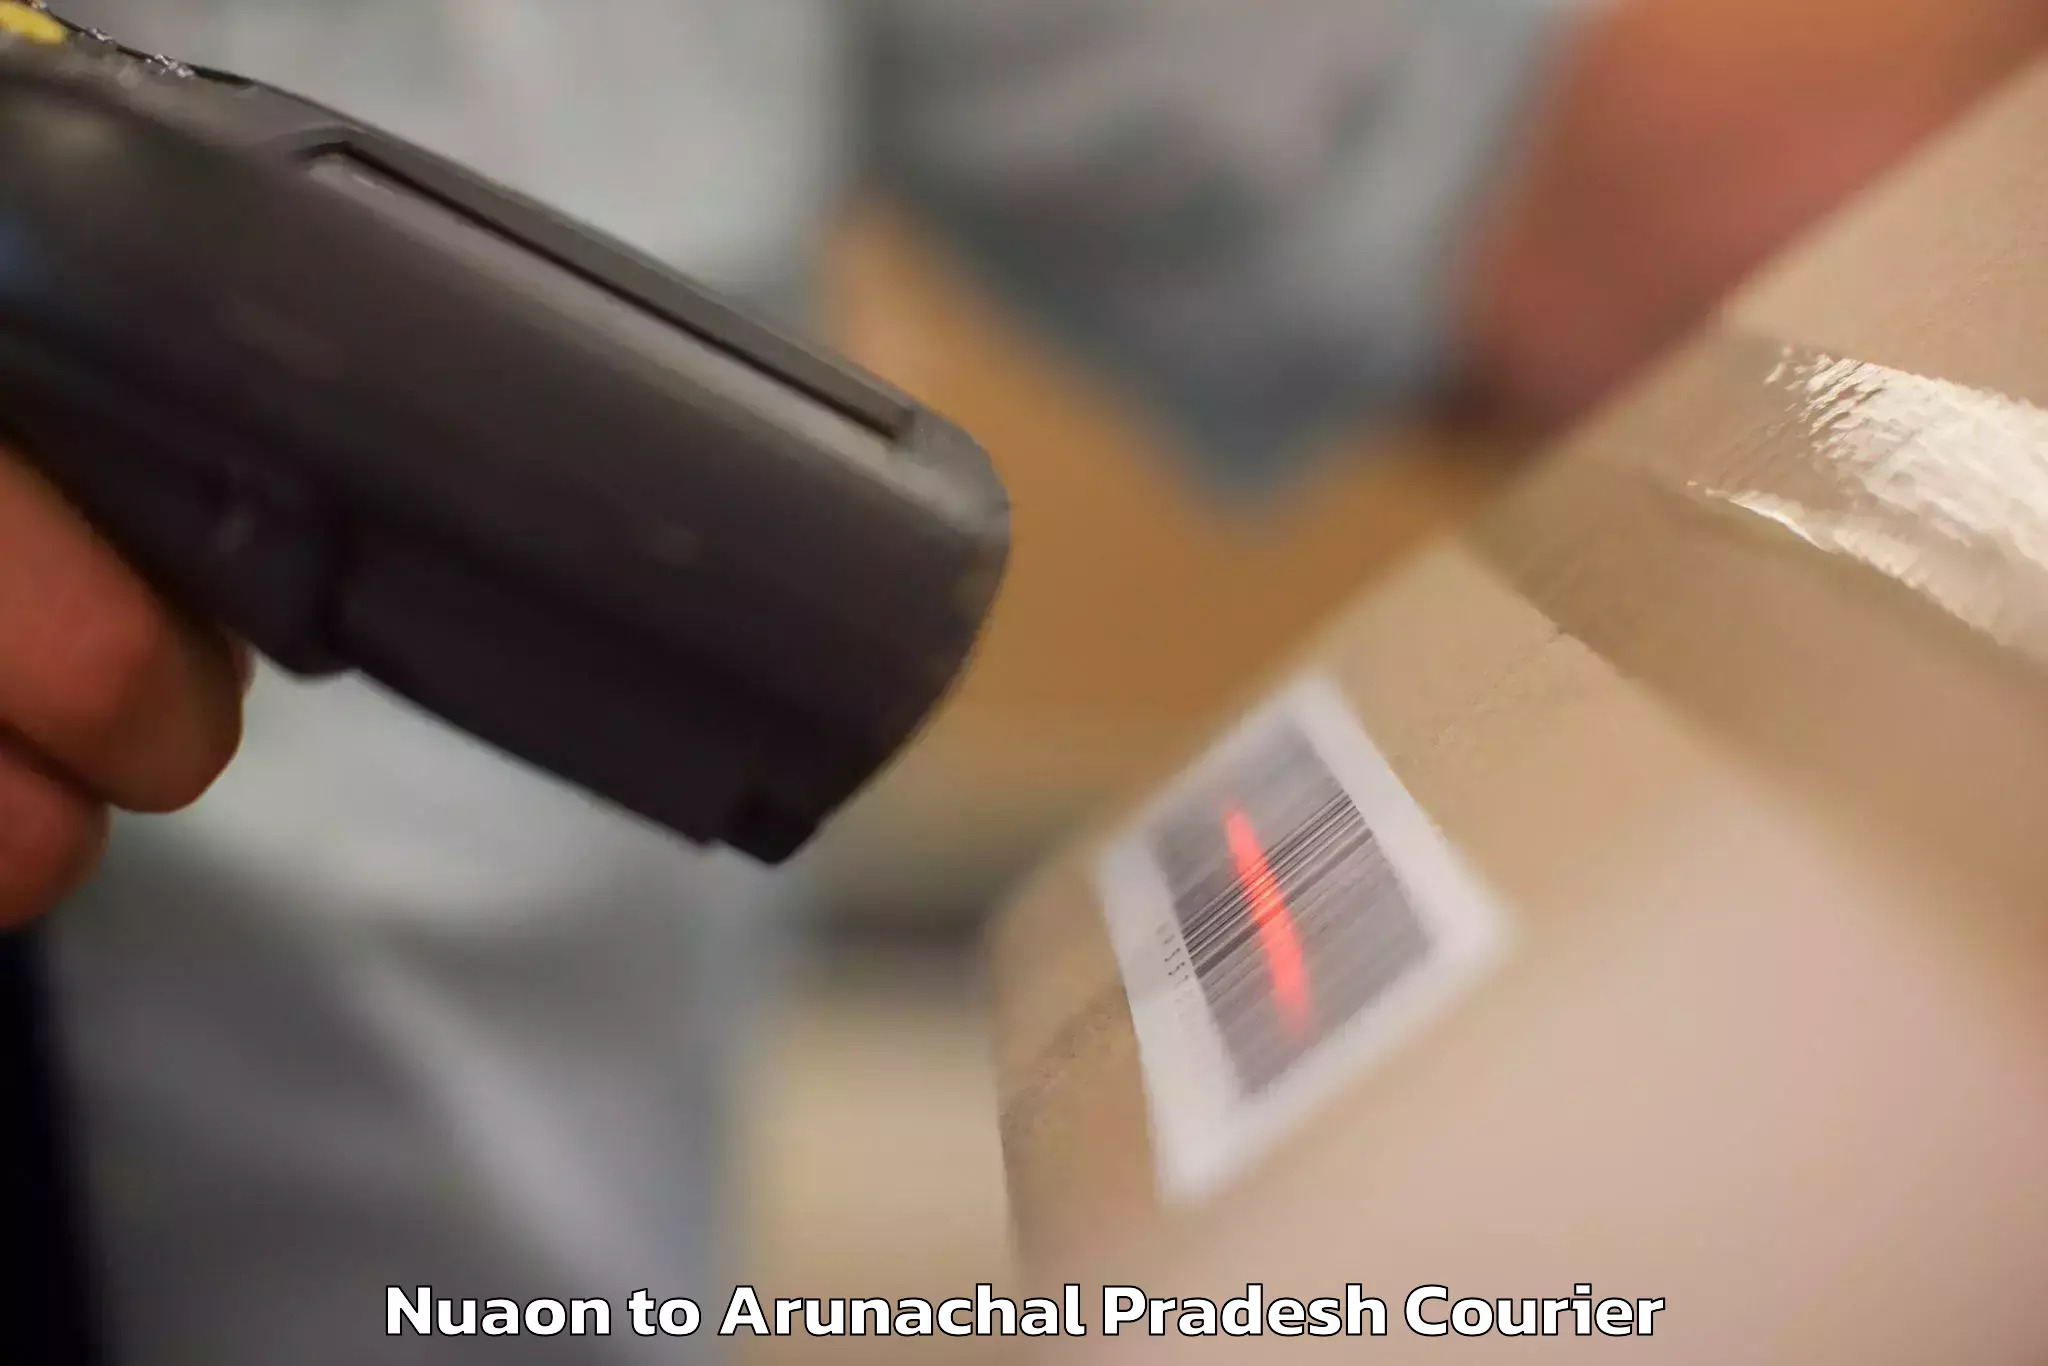 Luggage transport service Nuaon to Arunachal Pradesh